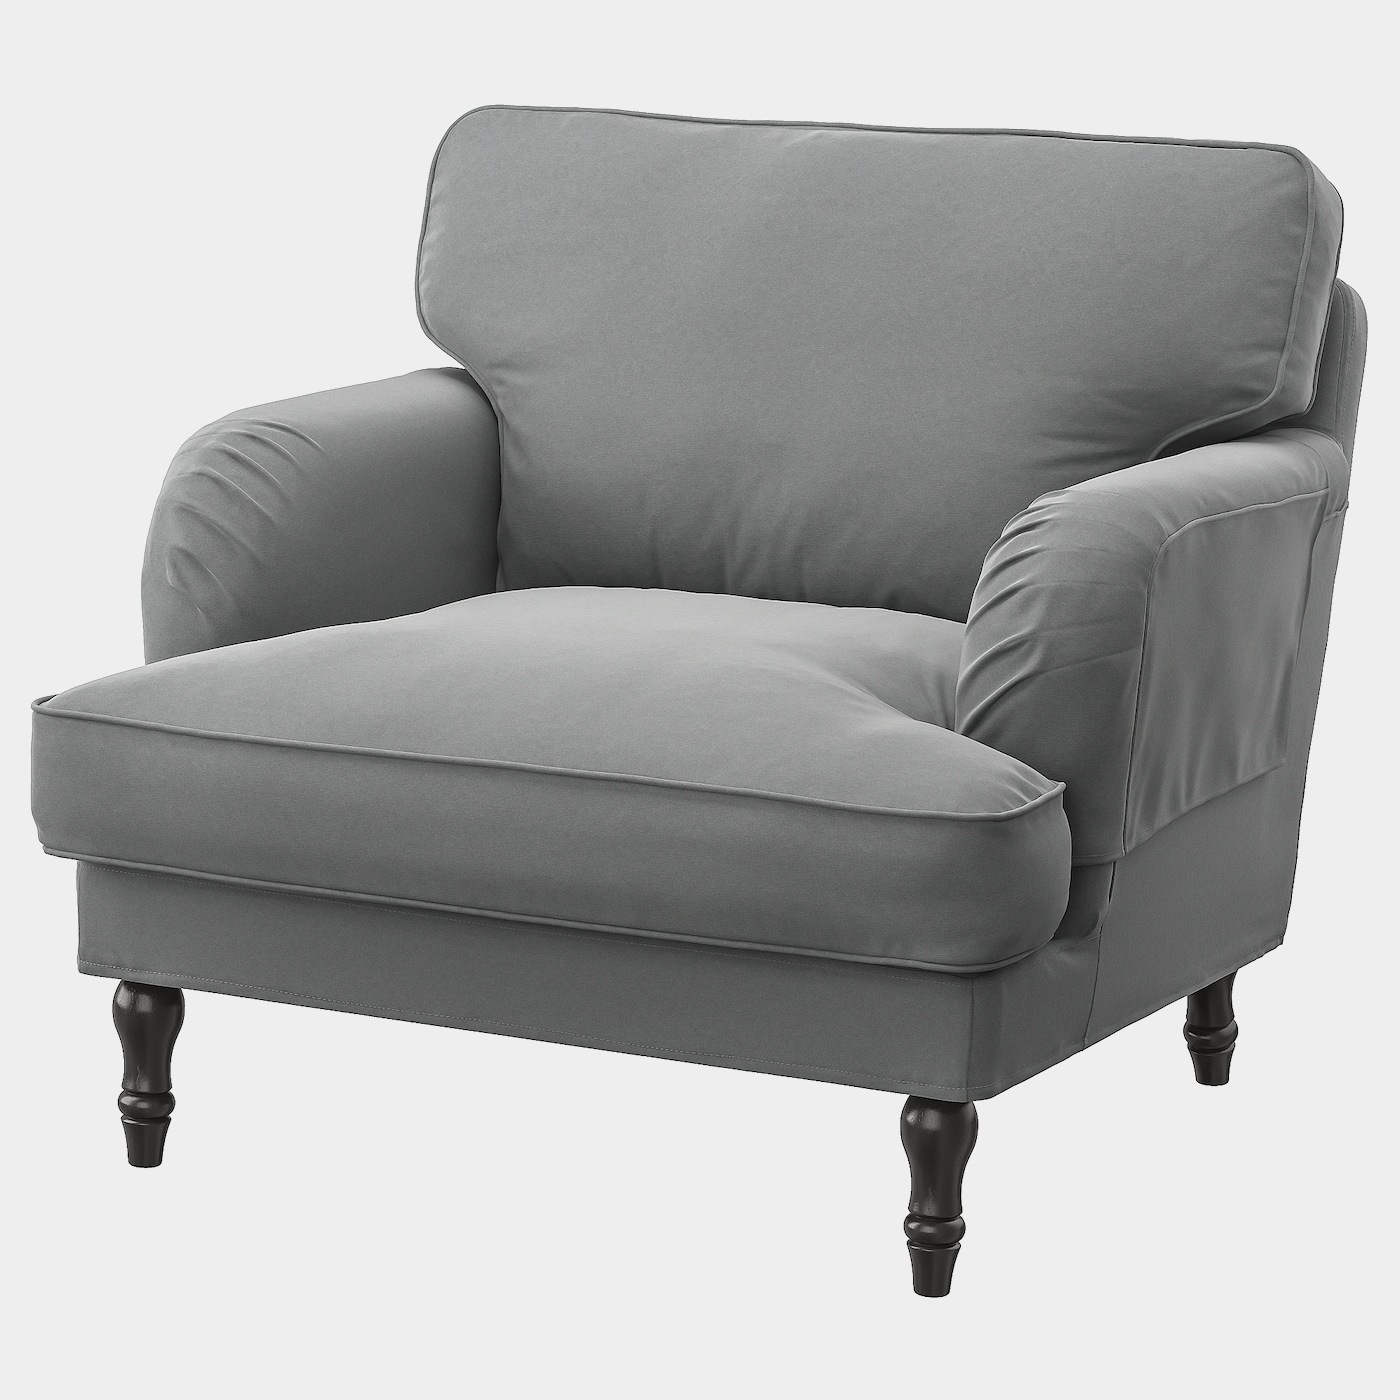 STOCKSUND Bezug für Sessel  - extra Bezüge - Möbel Ideen für dein Zuhause von Home Trends. Möbel Trends von Social Media Influencer für dein Skandi Zuhause.